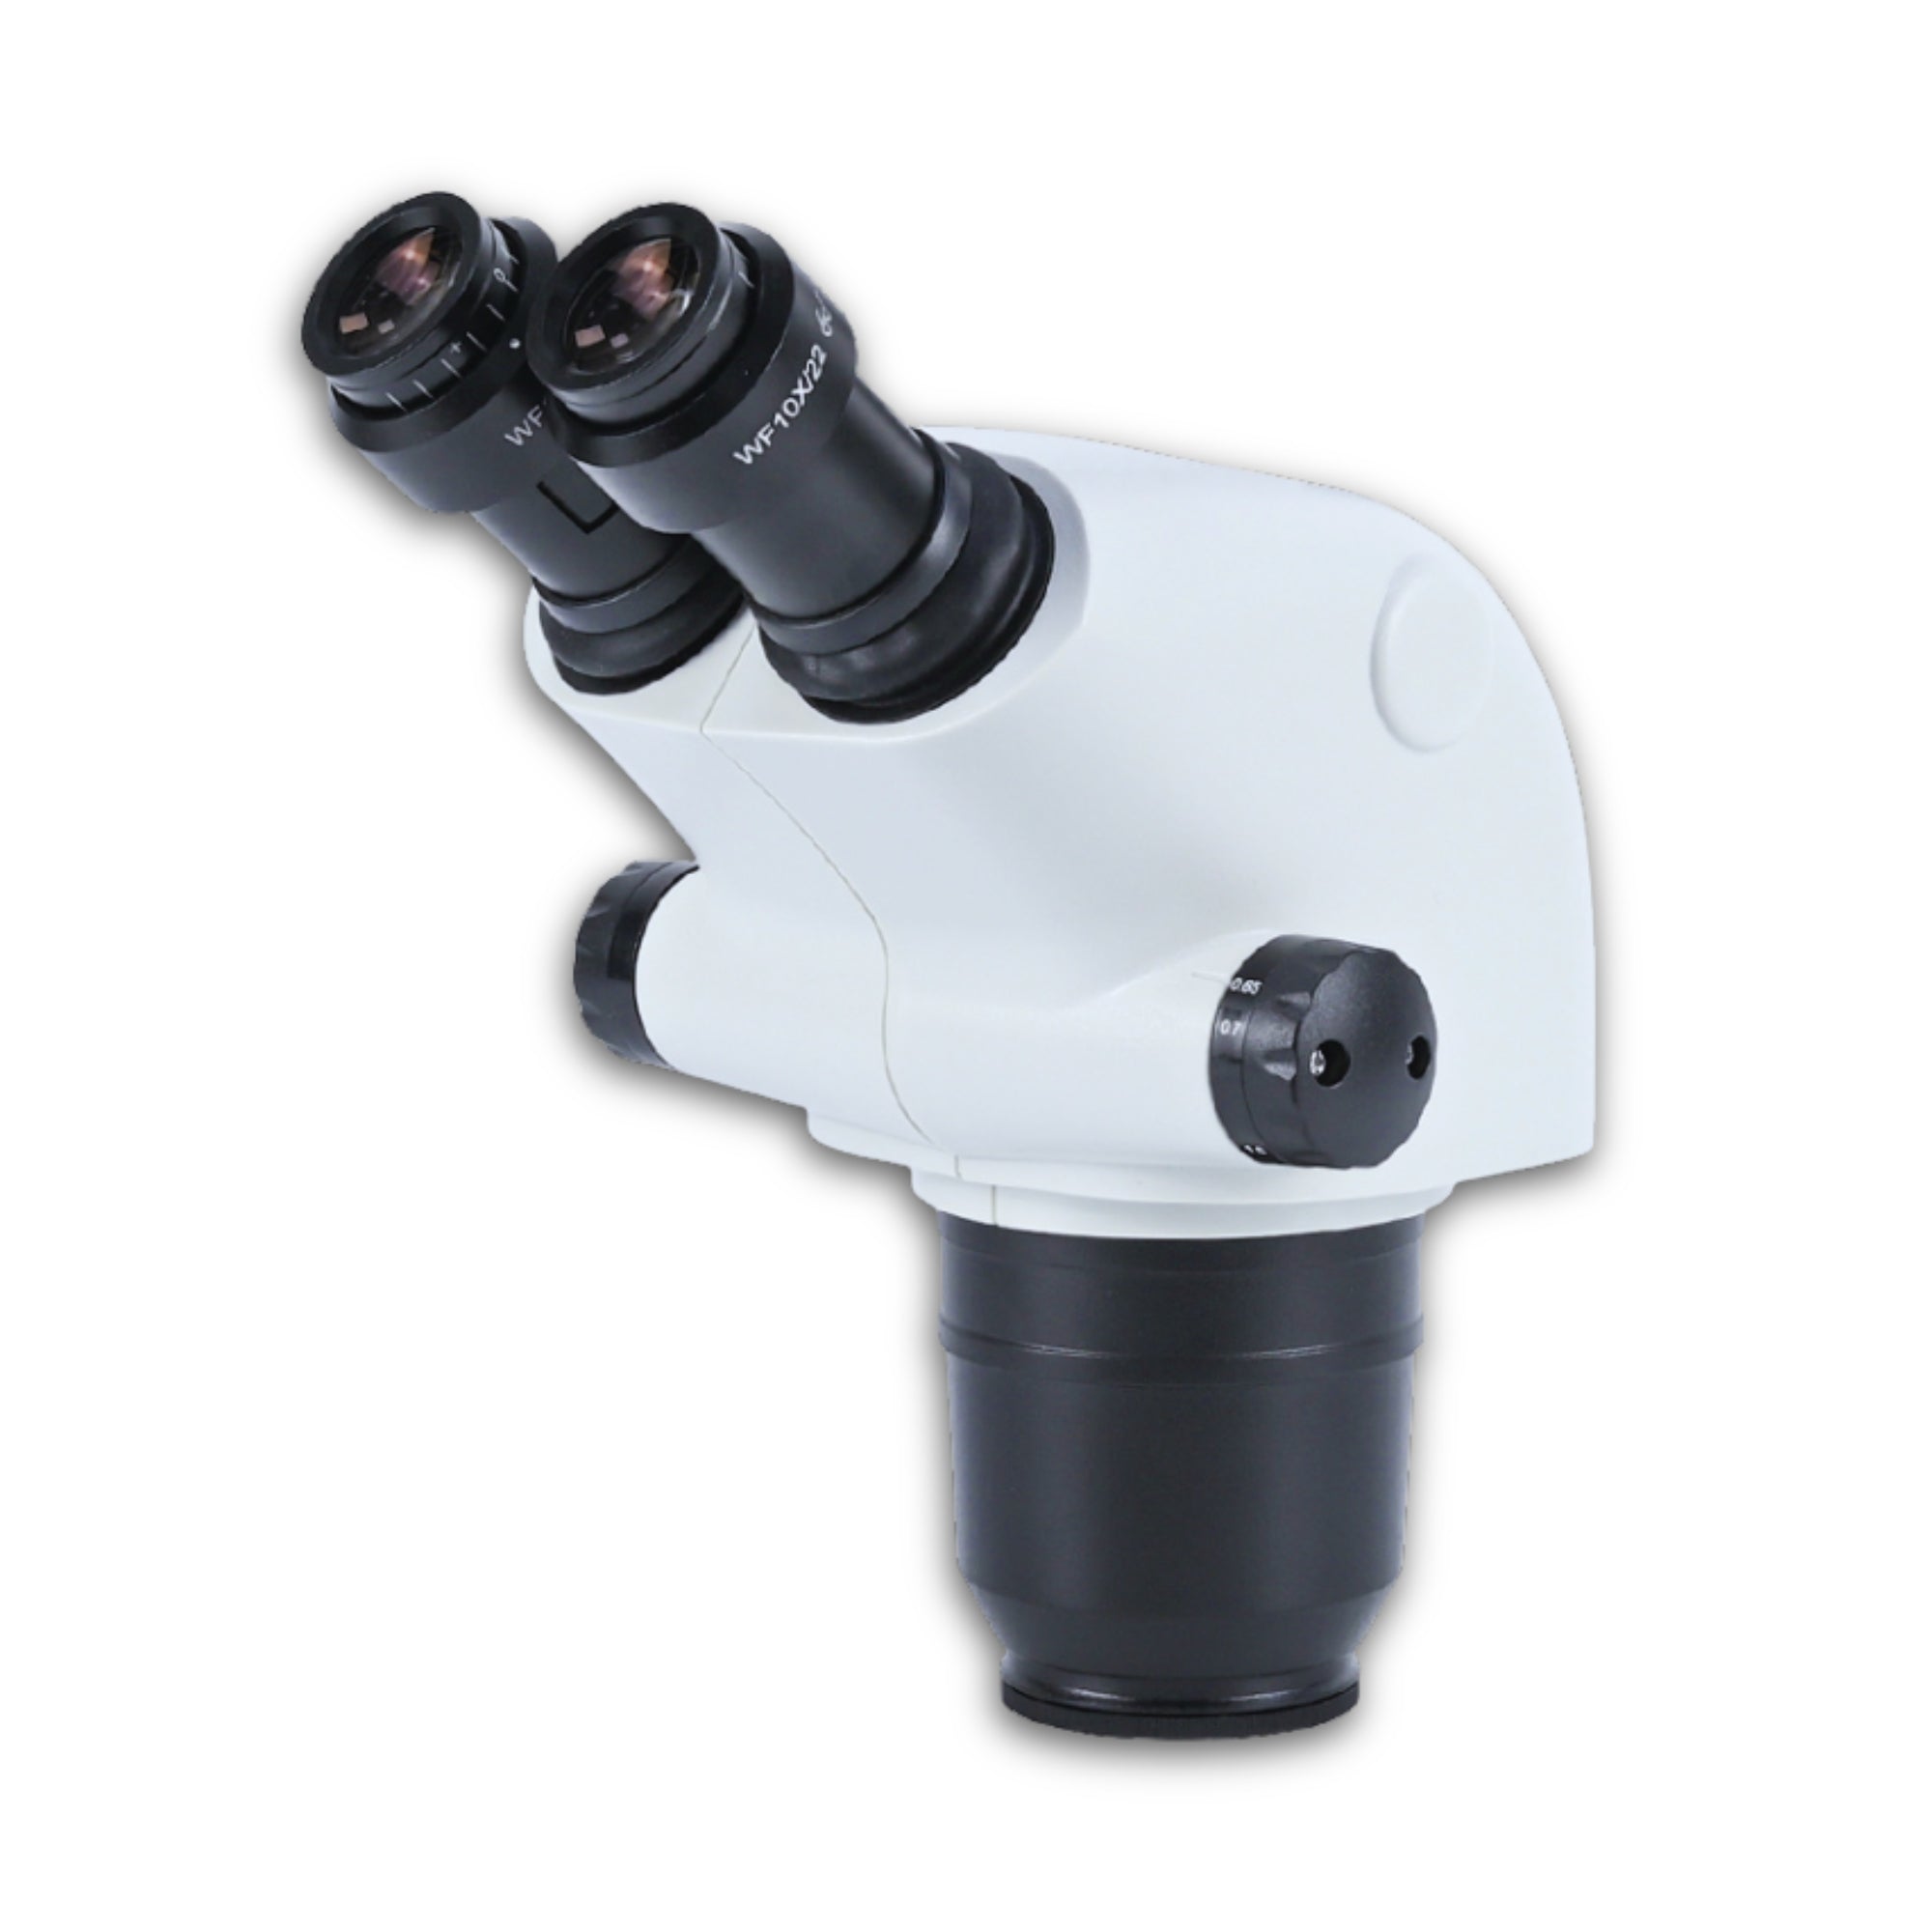 Фазерен микроскоп комплект със стойка със стойка предназначена за фиксиран монтаж на златарска или фазерска маса